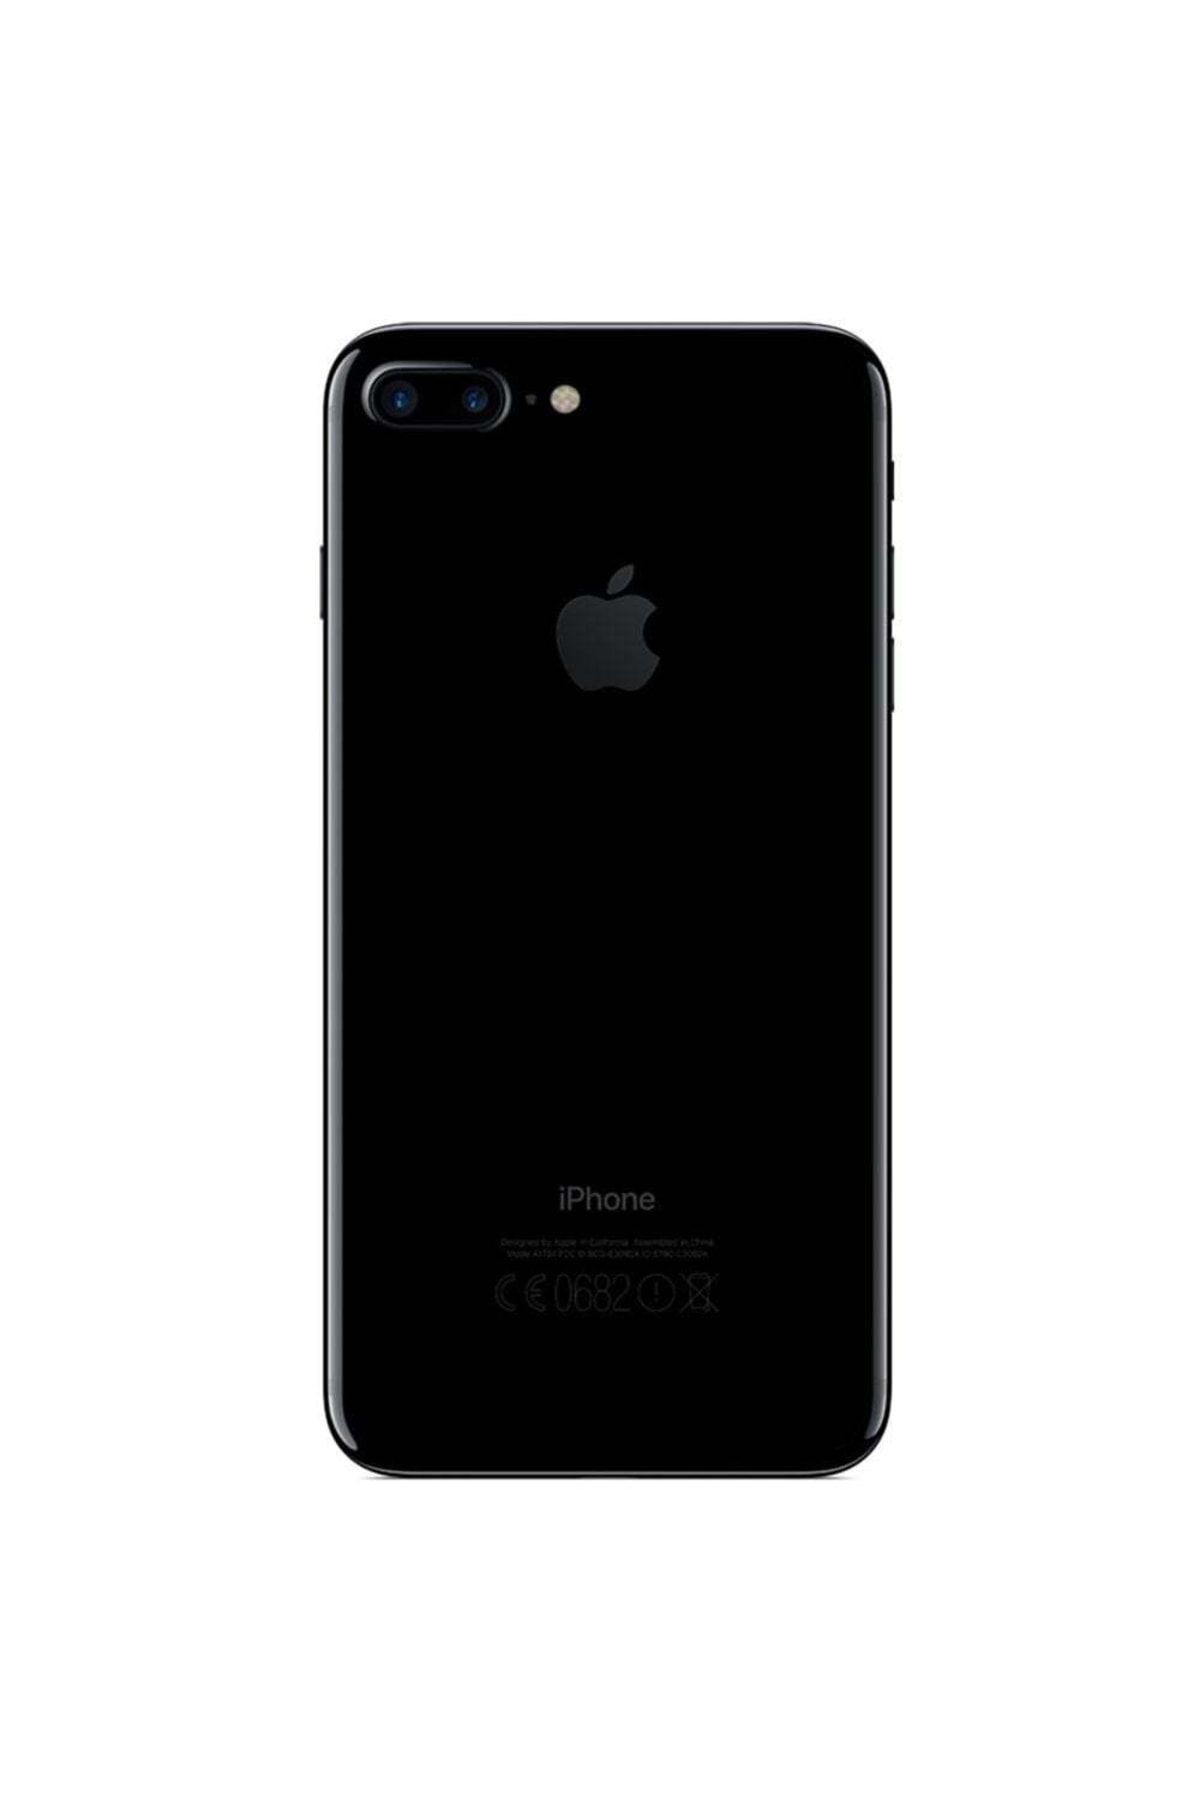 Apple Yenilenmiş iPhone Plus Jet Black 128 GB A Kalite (12 Ay Garantili)  Fiyatı, Yorumları Trendyol